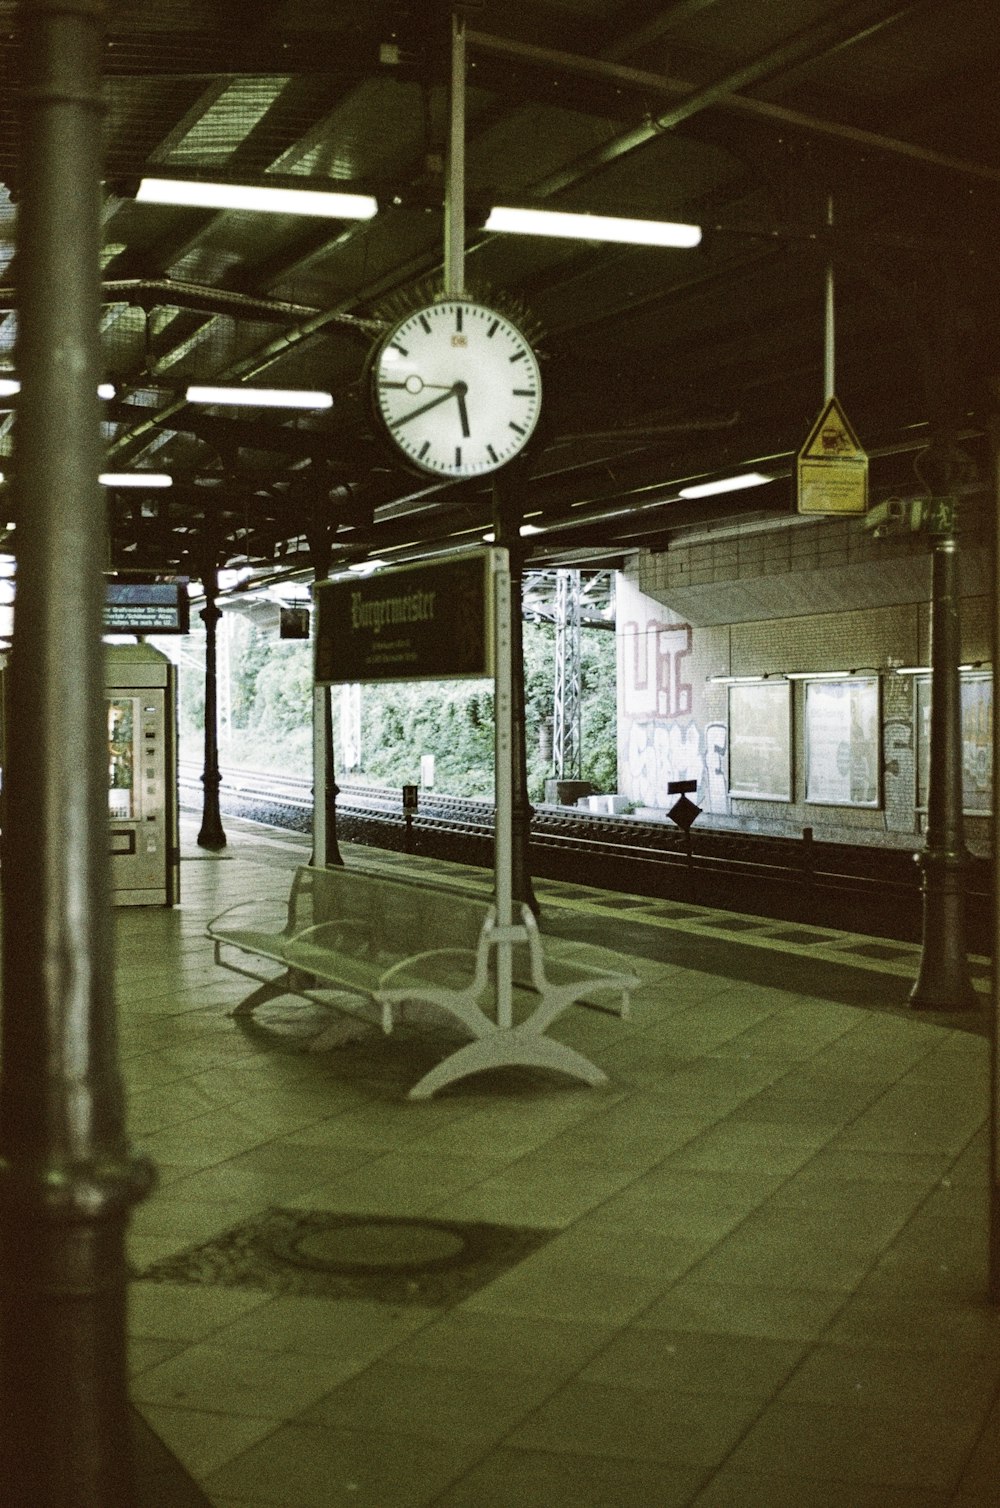 Eine Uhr an einem Mast in einem Bahnhof